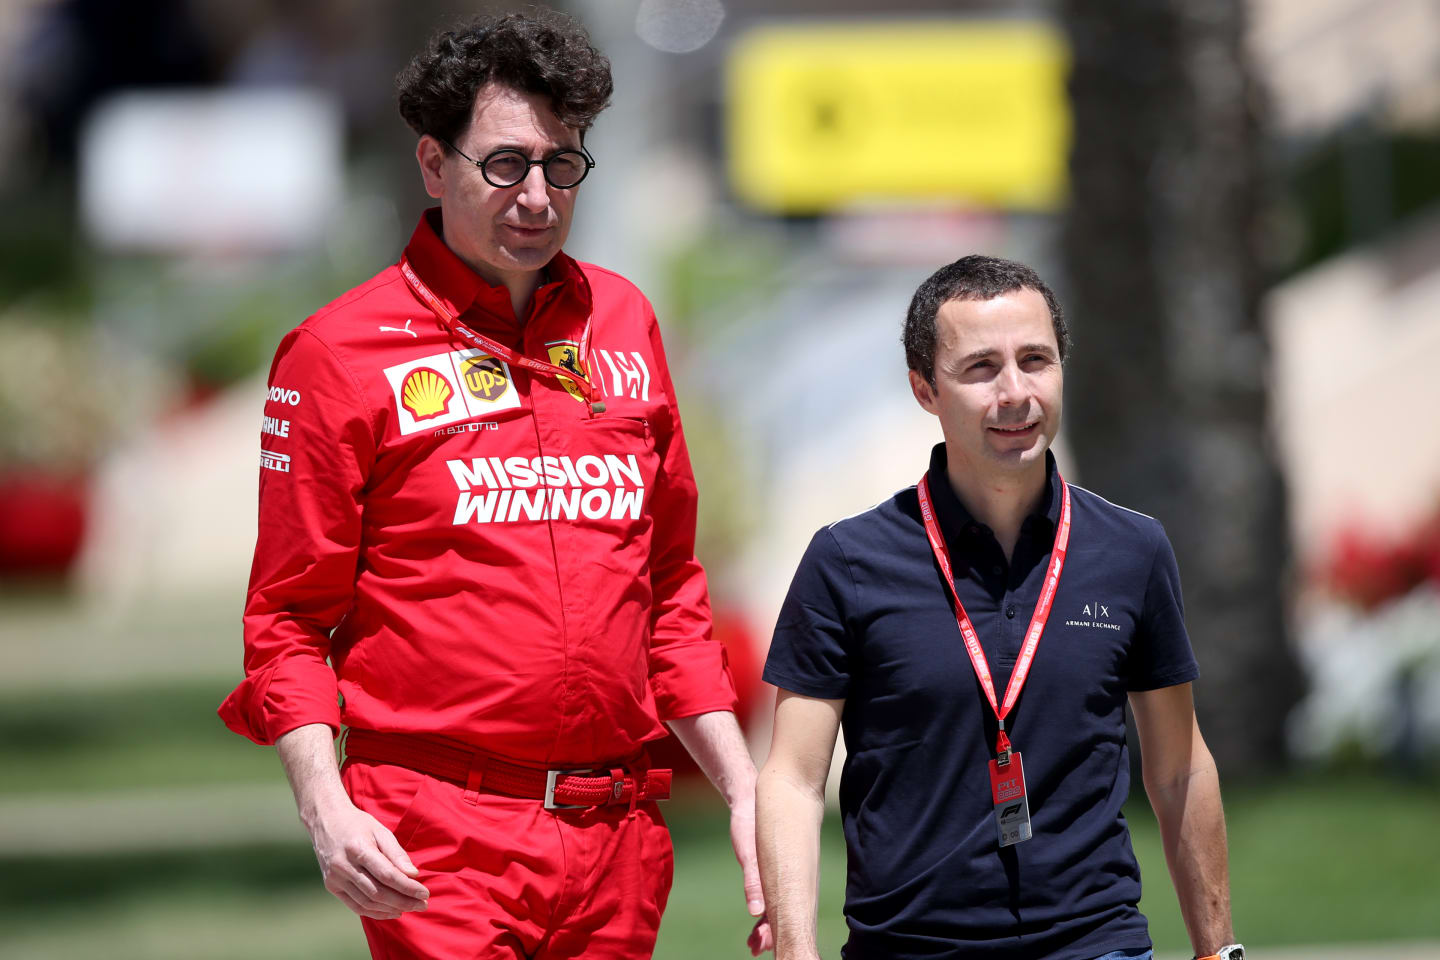 BAHRAIN, BAHRAIN - MARCH 29: Ferrari Team Principal Mattia Binotto talks with Nicholas Todt in the